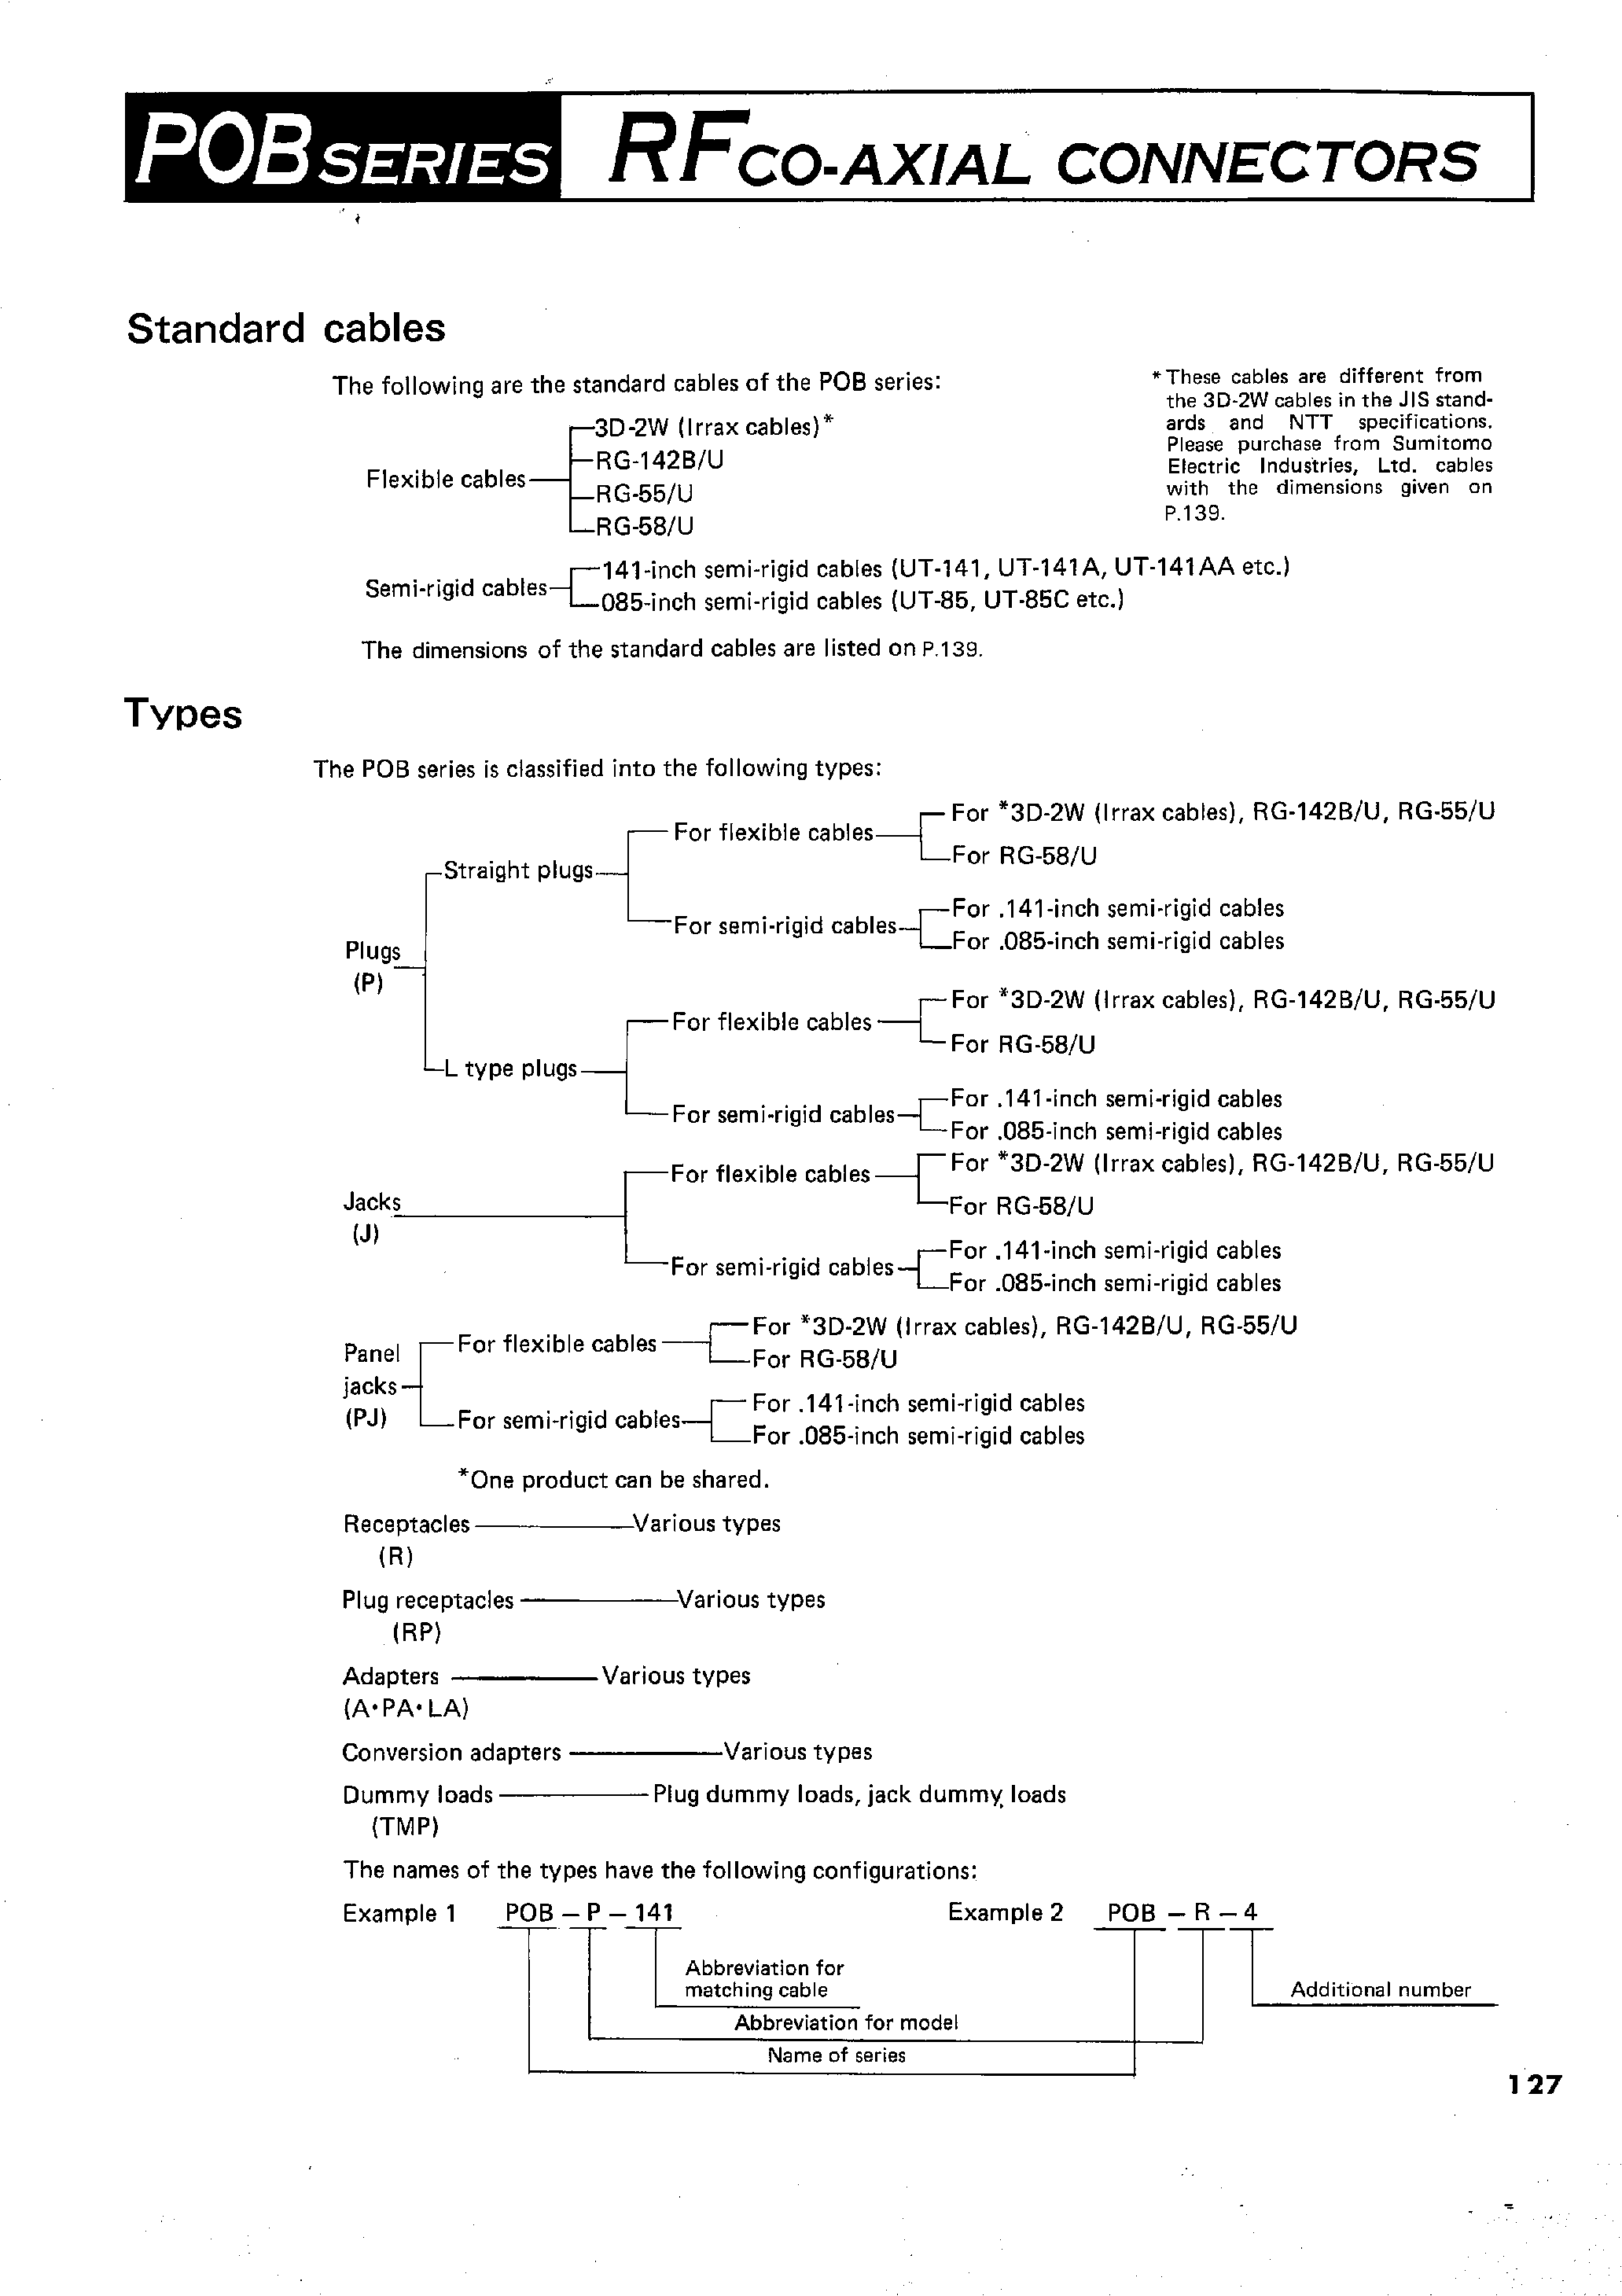 Datasheet POB-P-55/U - RFCO-AXIAL CONNECTORS page 2